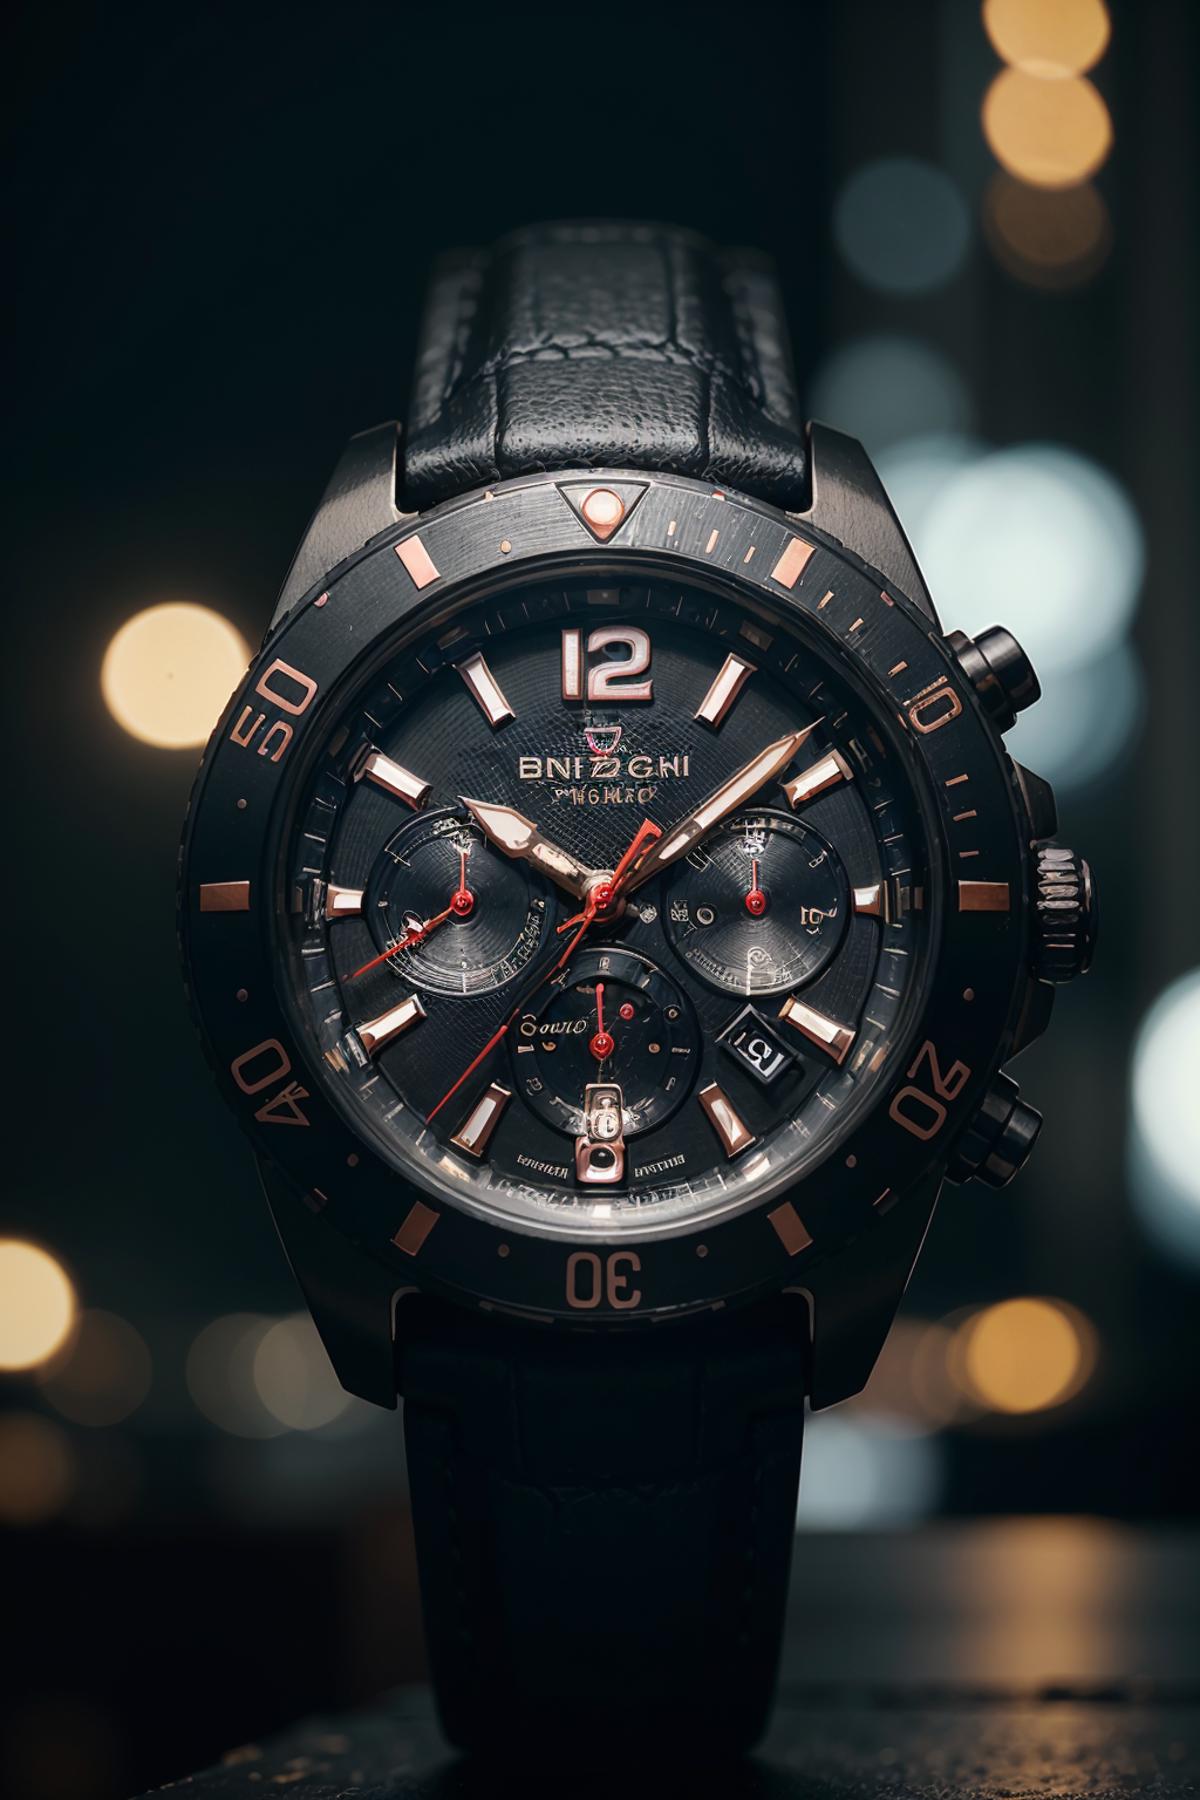 A close-up of a black Breguet GMT watch.